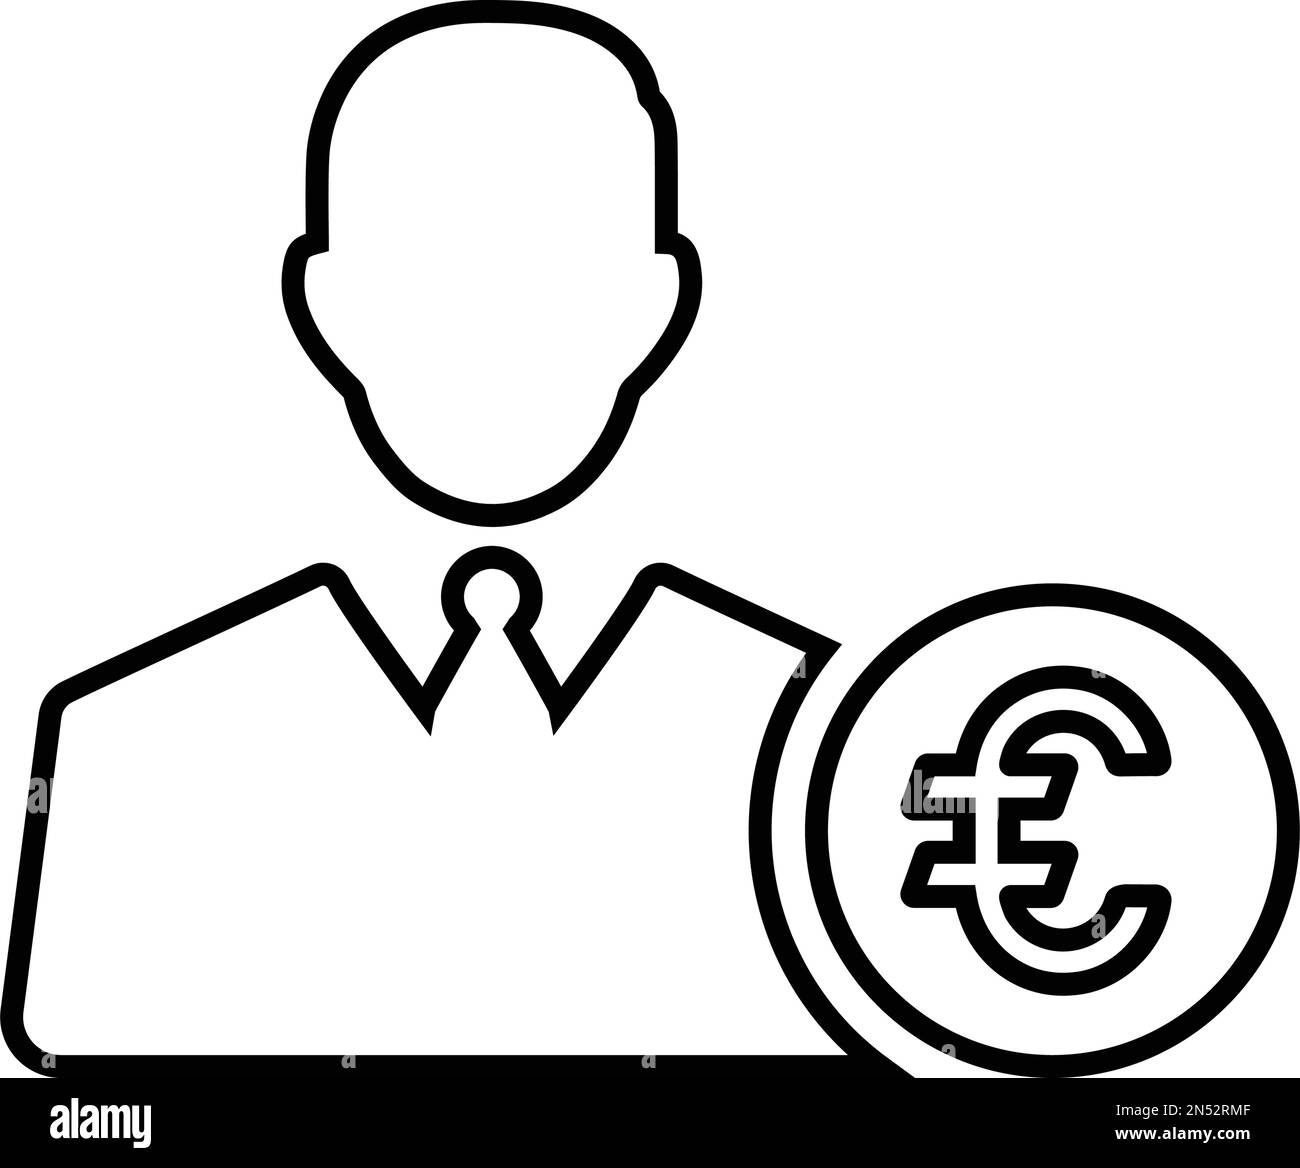 Banchiere, l'icona del finanziatore dell'euro è isolata su sfondo bianco. Utilizzo per grafica e web design o scopi commerciali. File EPS vettoriale. Illustrazione Vettoriale